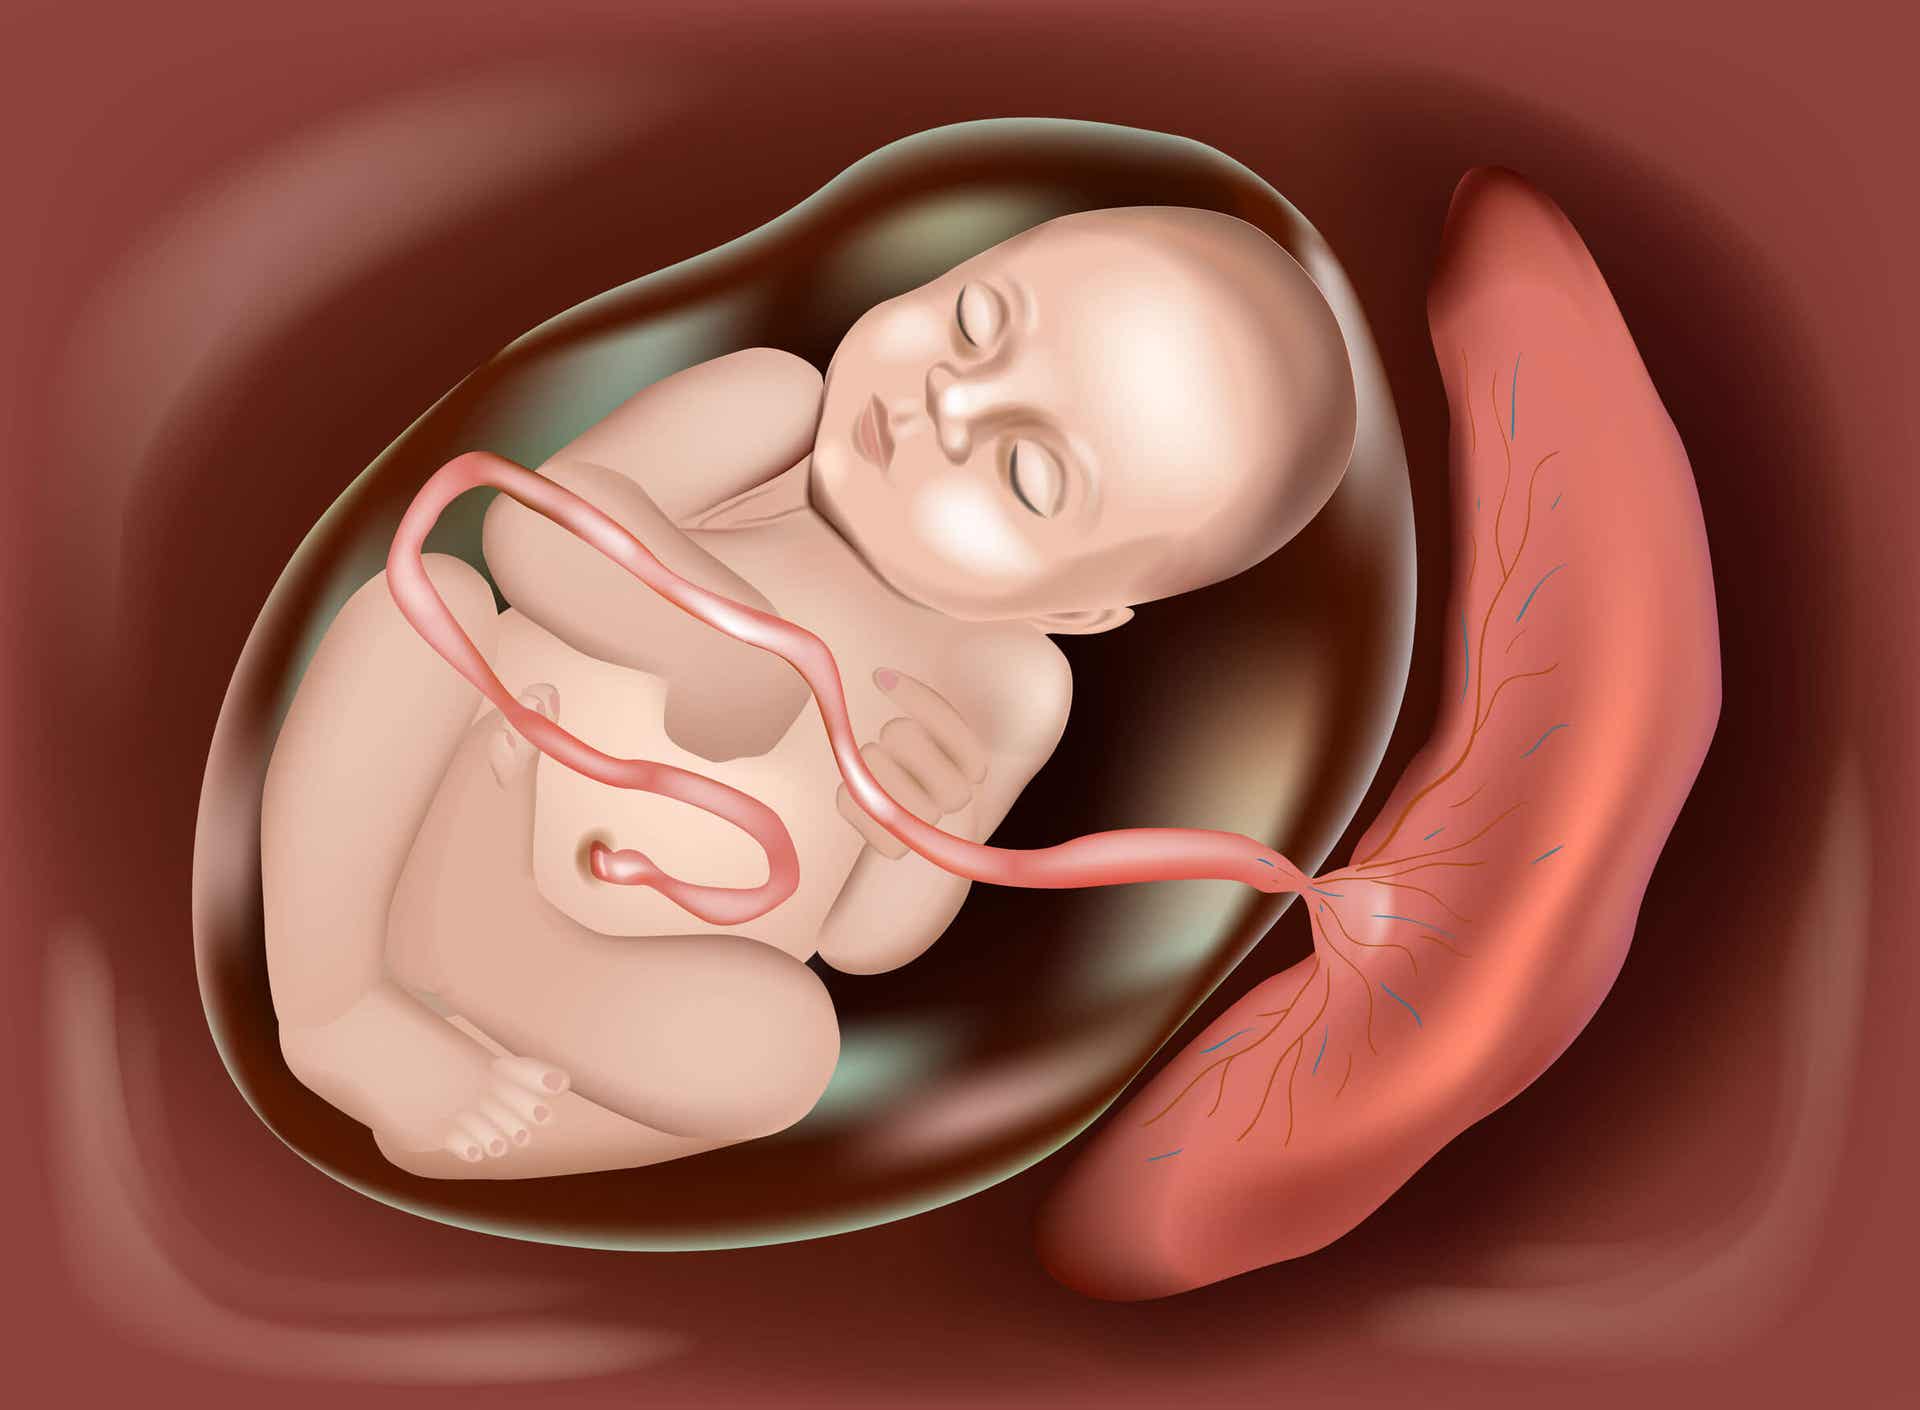 En tegning af en baby i livmoderen, forbundet med moderkagen